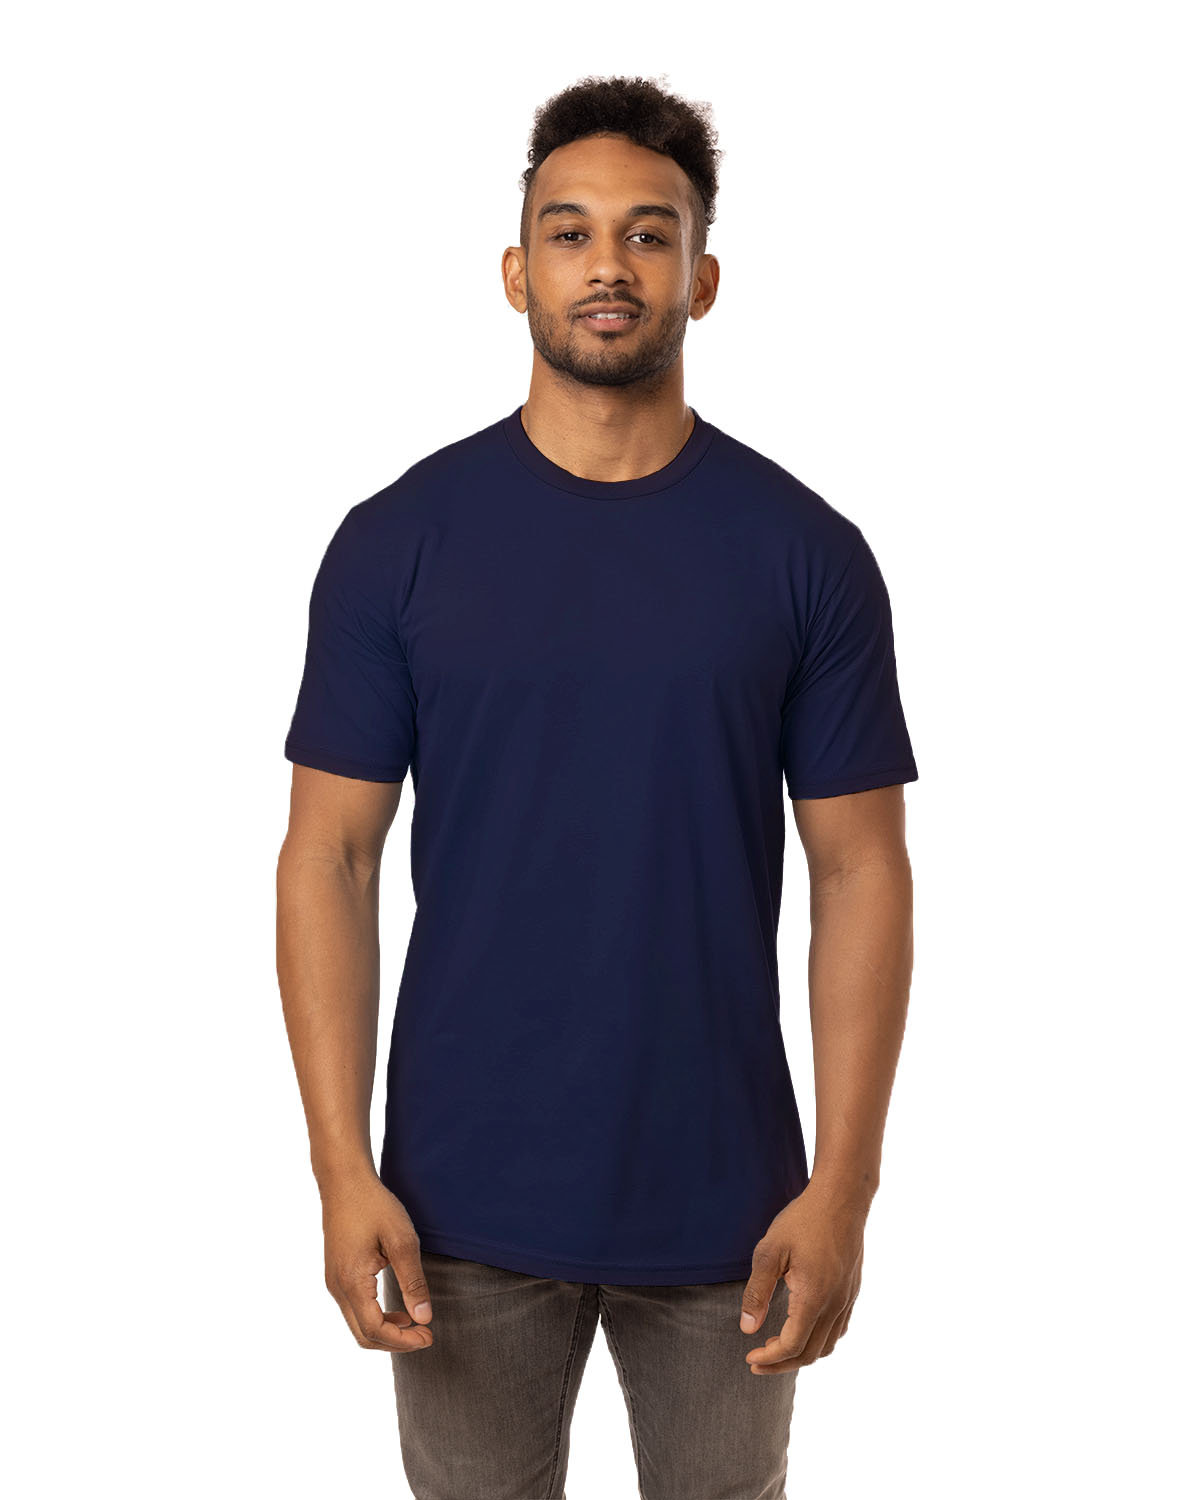 econscious Unisex Eco Fashion T-Shirt navy 